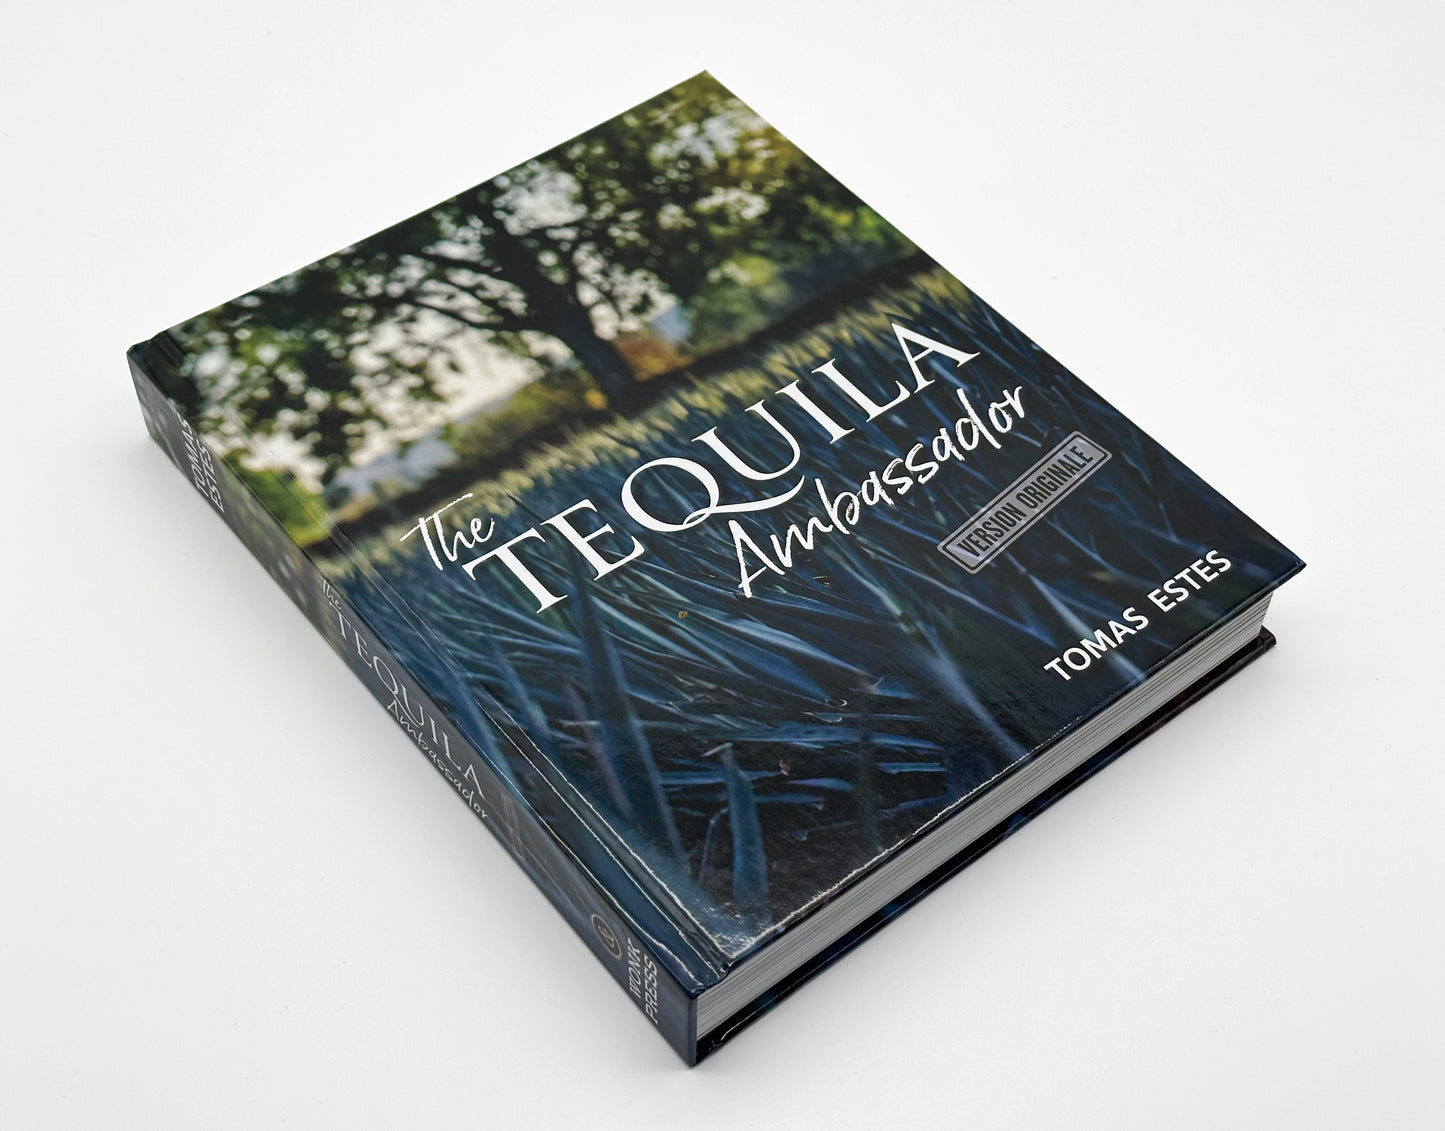 The Tequila Ambassador V.O.